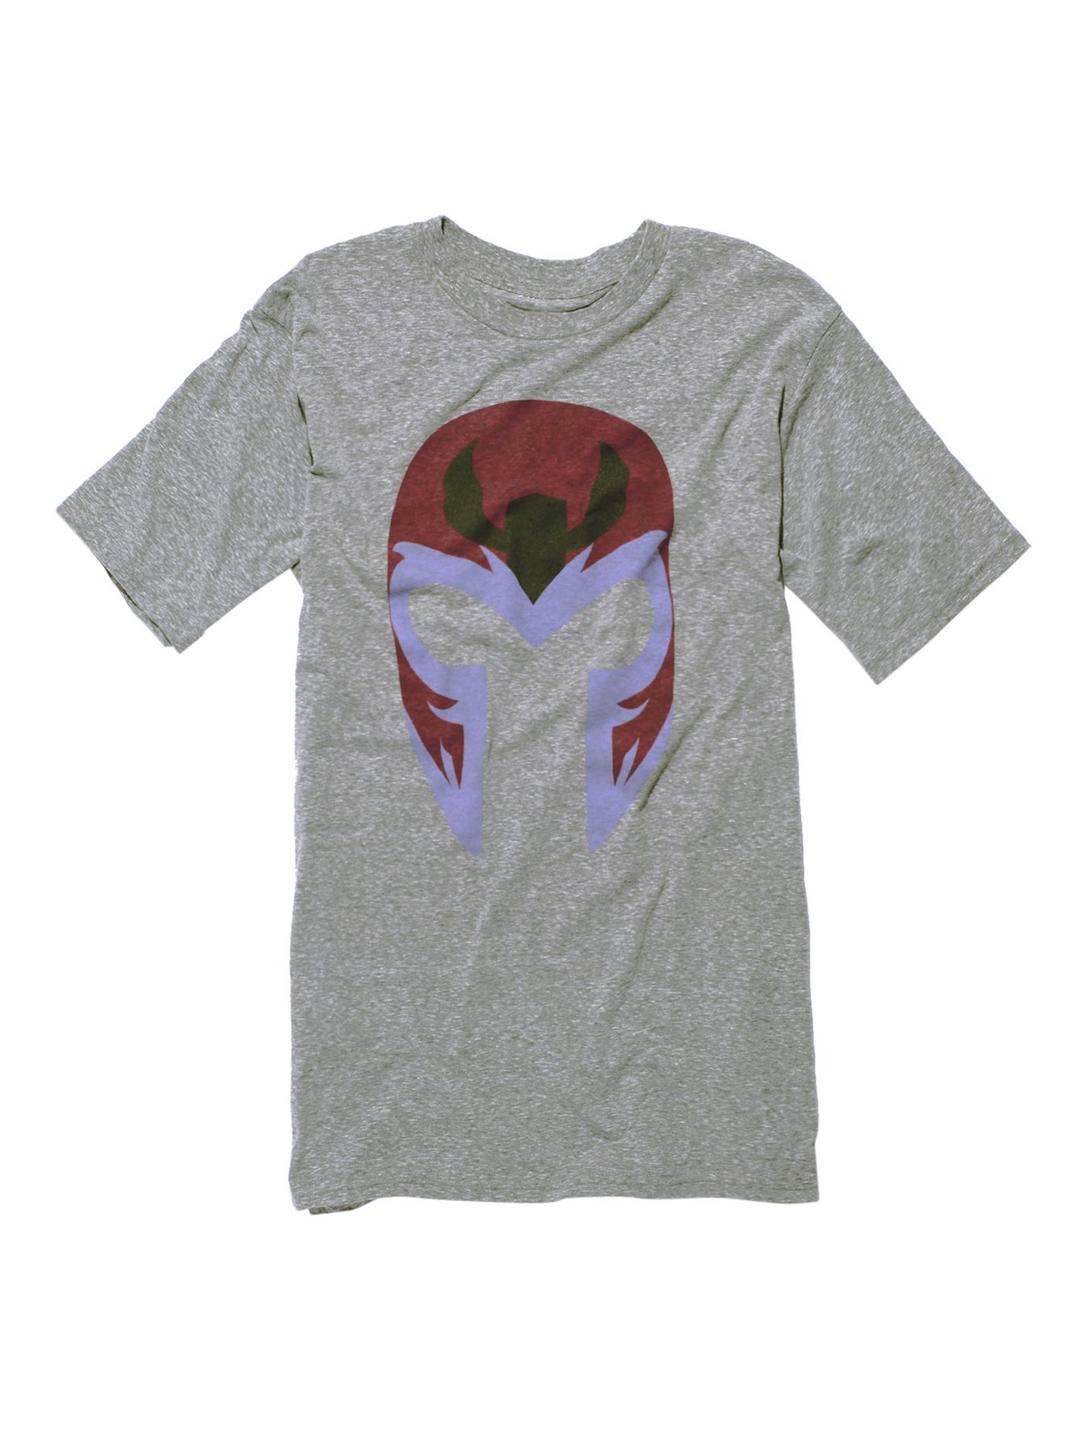 Marvel X-Men Magneto Helmet T-Shirt, GREY, hi-res